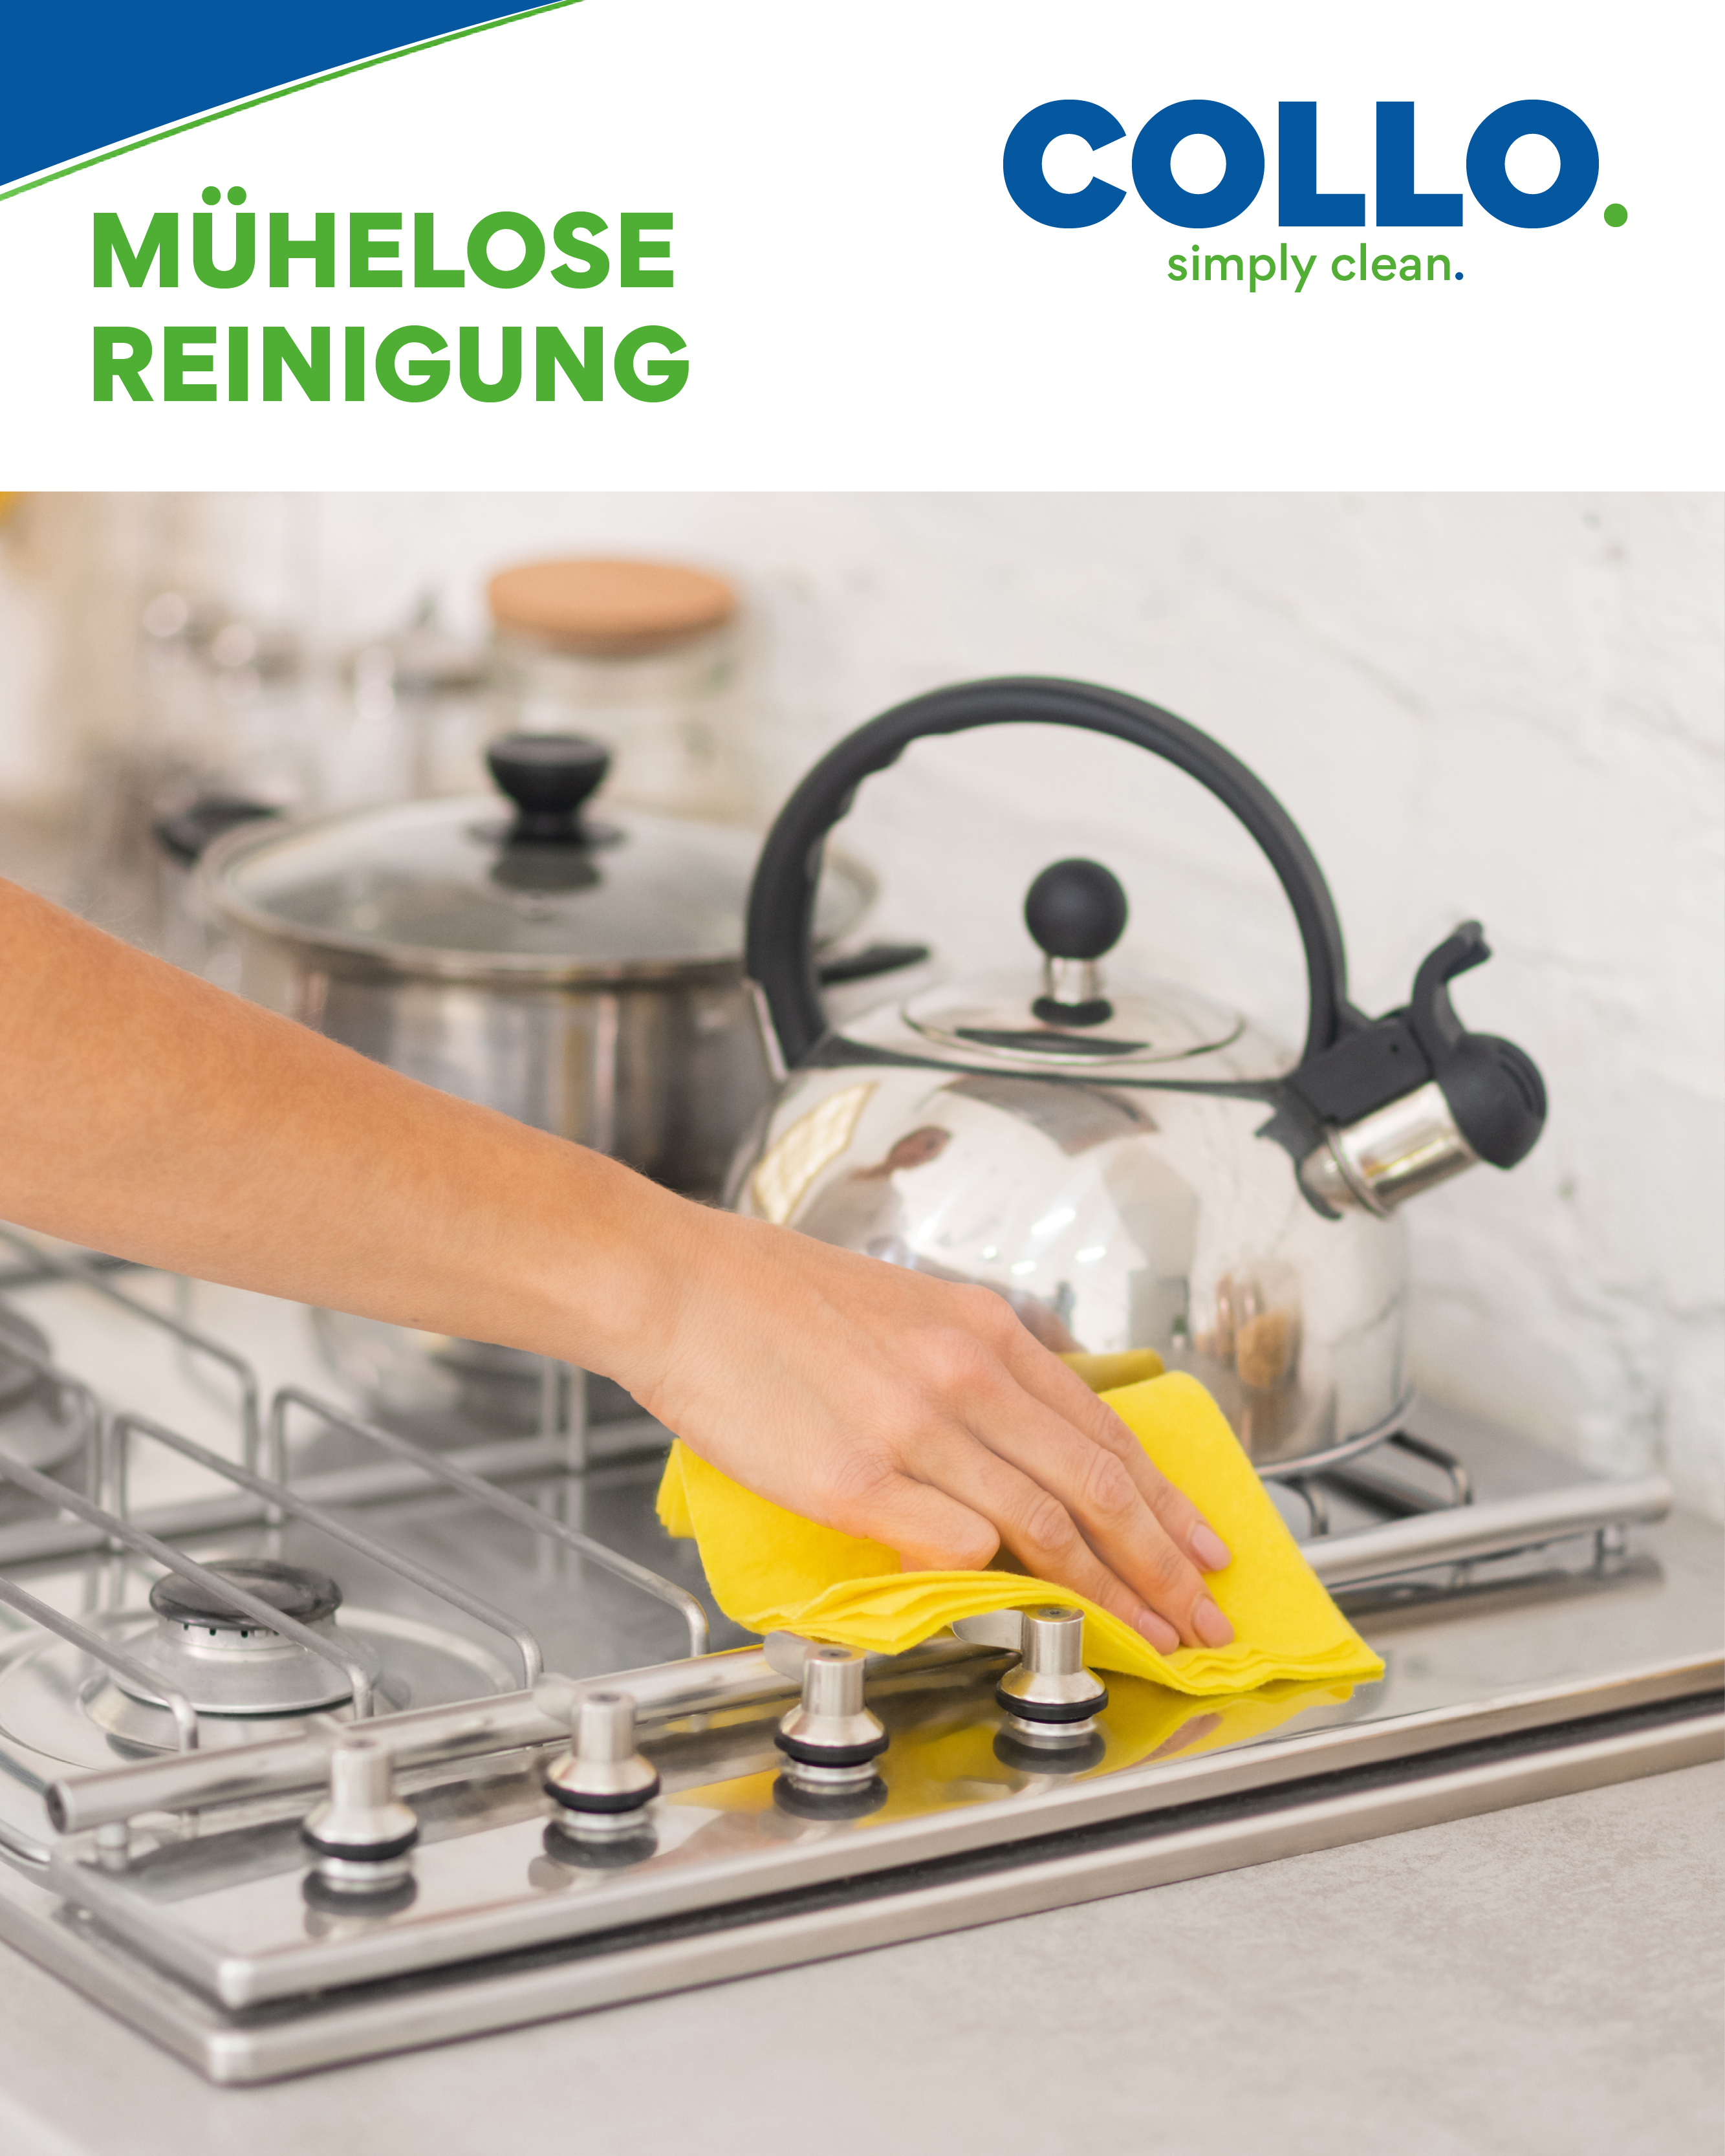 Edelstahlpflege für Grill und Küche: Reinigung und Schutz vor hartnäckigen Verschmutzungen.